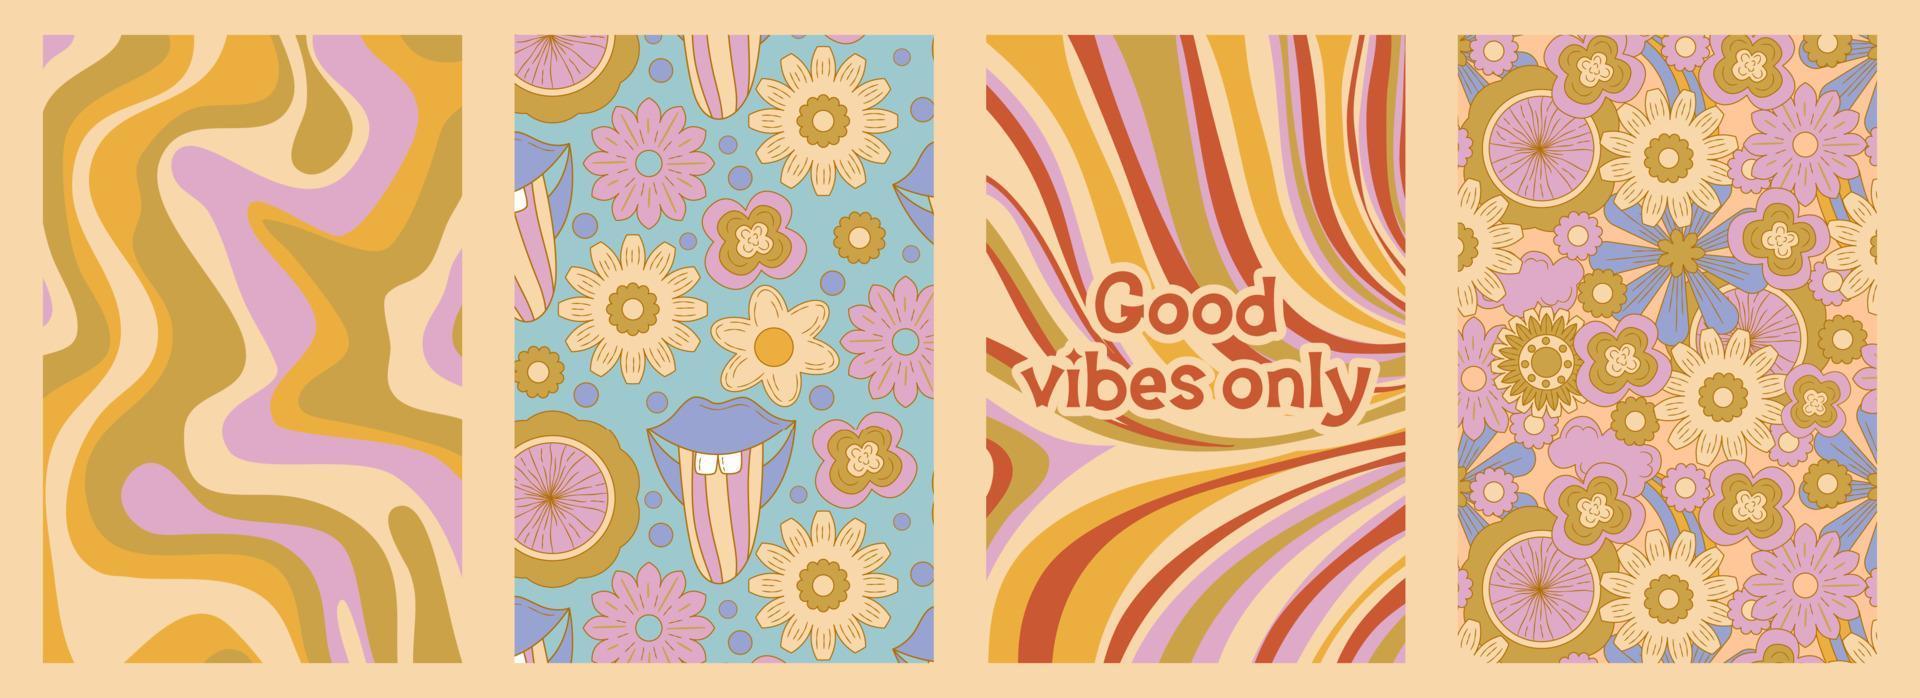 cartaz groovy definido em estilo cartoon com slogan e flor margarida. fundo de flor groovy. design psicodélico retrô dos anos 60 e 70. ilustração hippie abstrata vetor